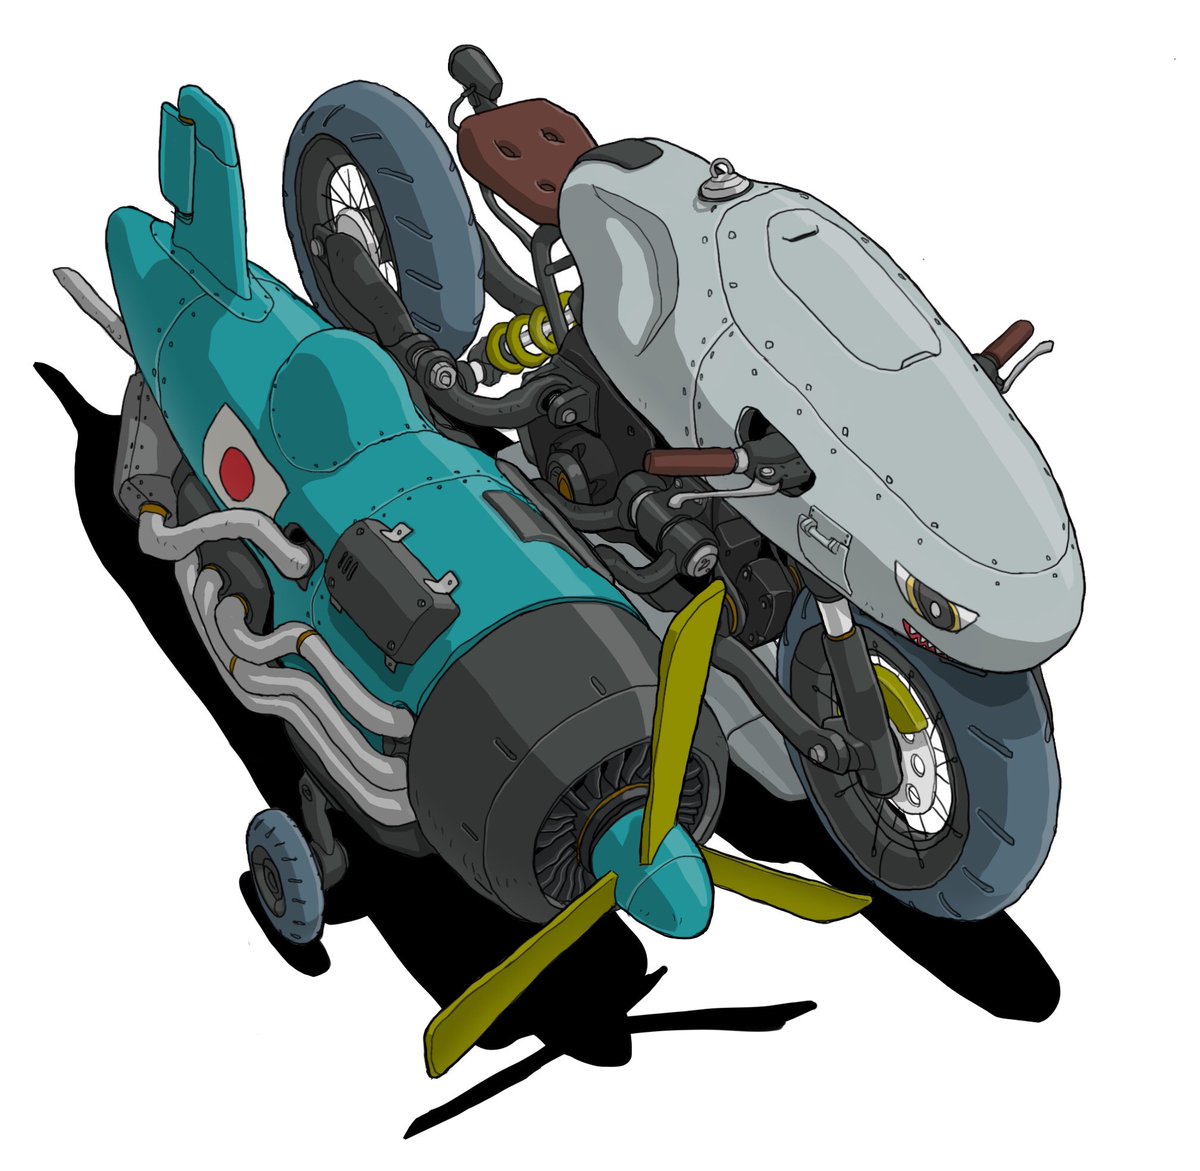 「#メカ #イラスト #illustration
プロペラ式三輪自動車 」|がとりんぐ三等兵のイラスト